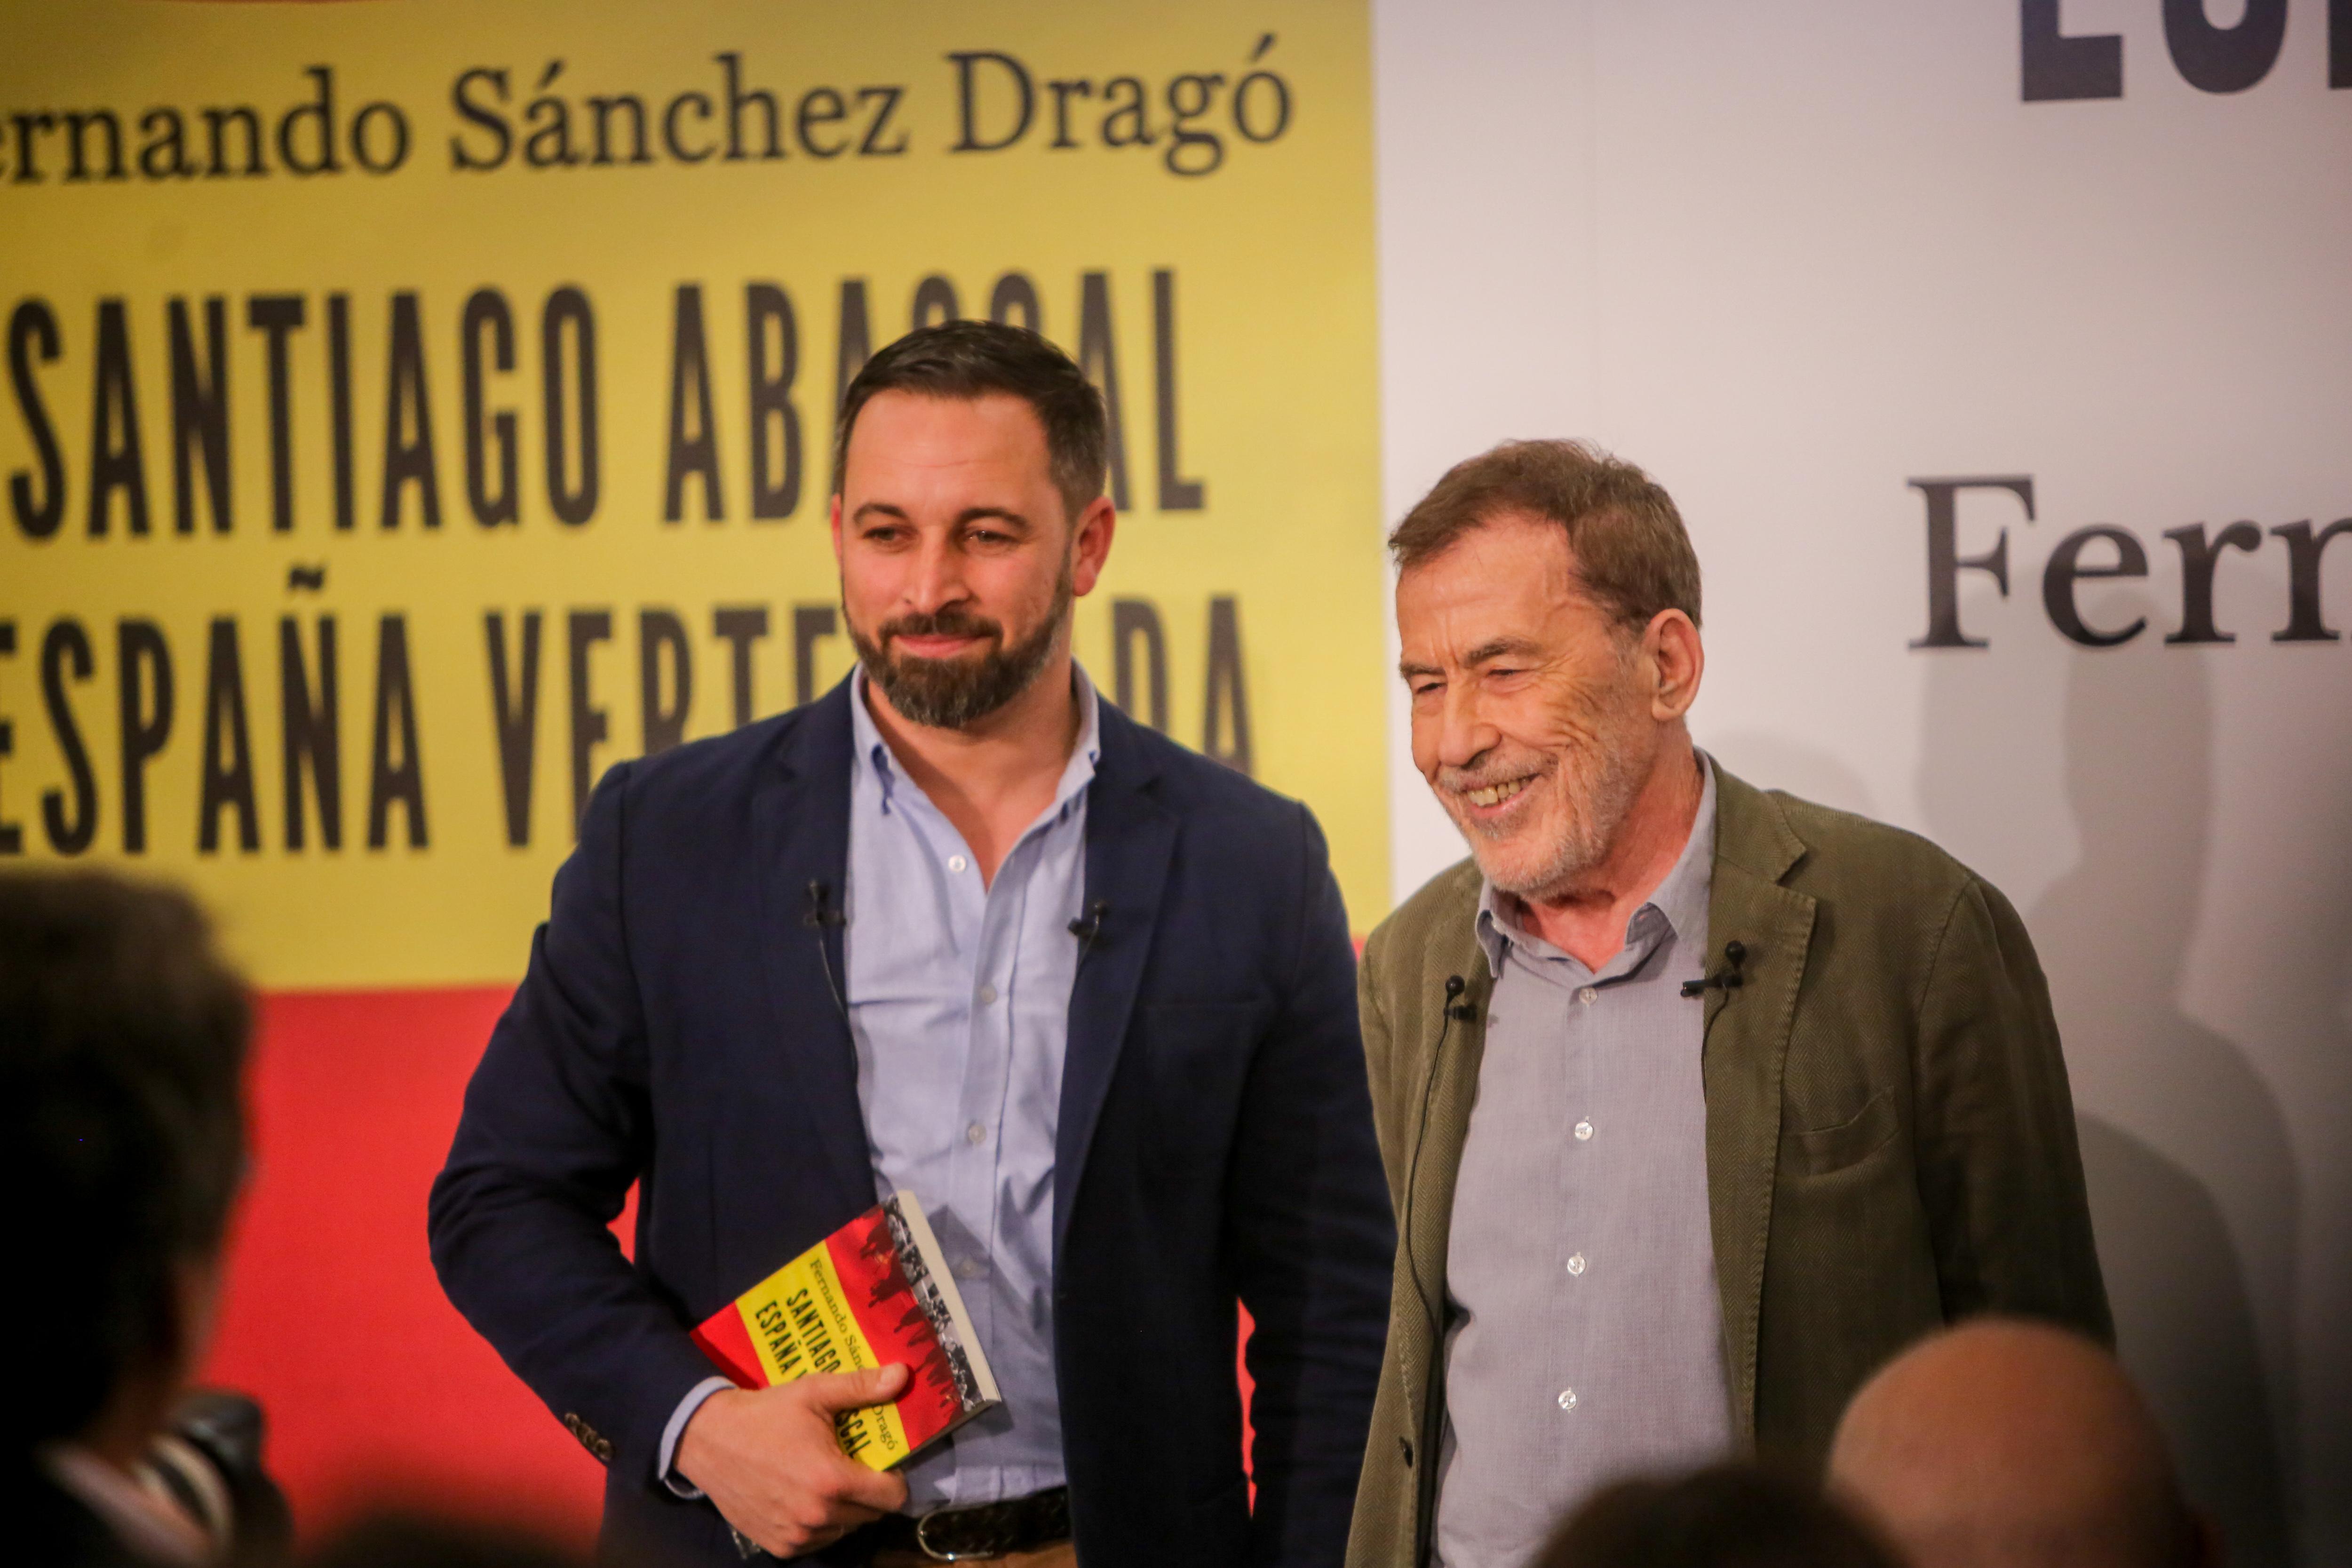 El presidente de Vox Santiago Abascal y el escritor Fernando Sánchez Dragó en la presentación del libro 'España vertebrada' (Europa Press)